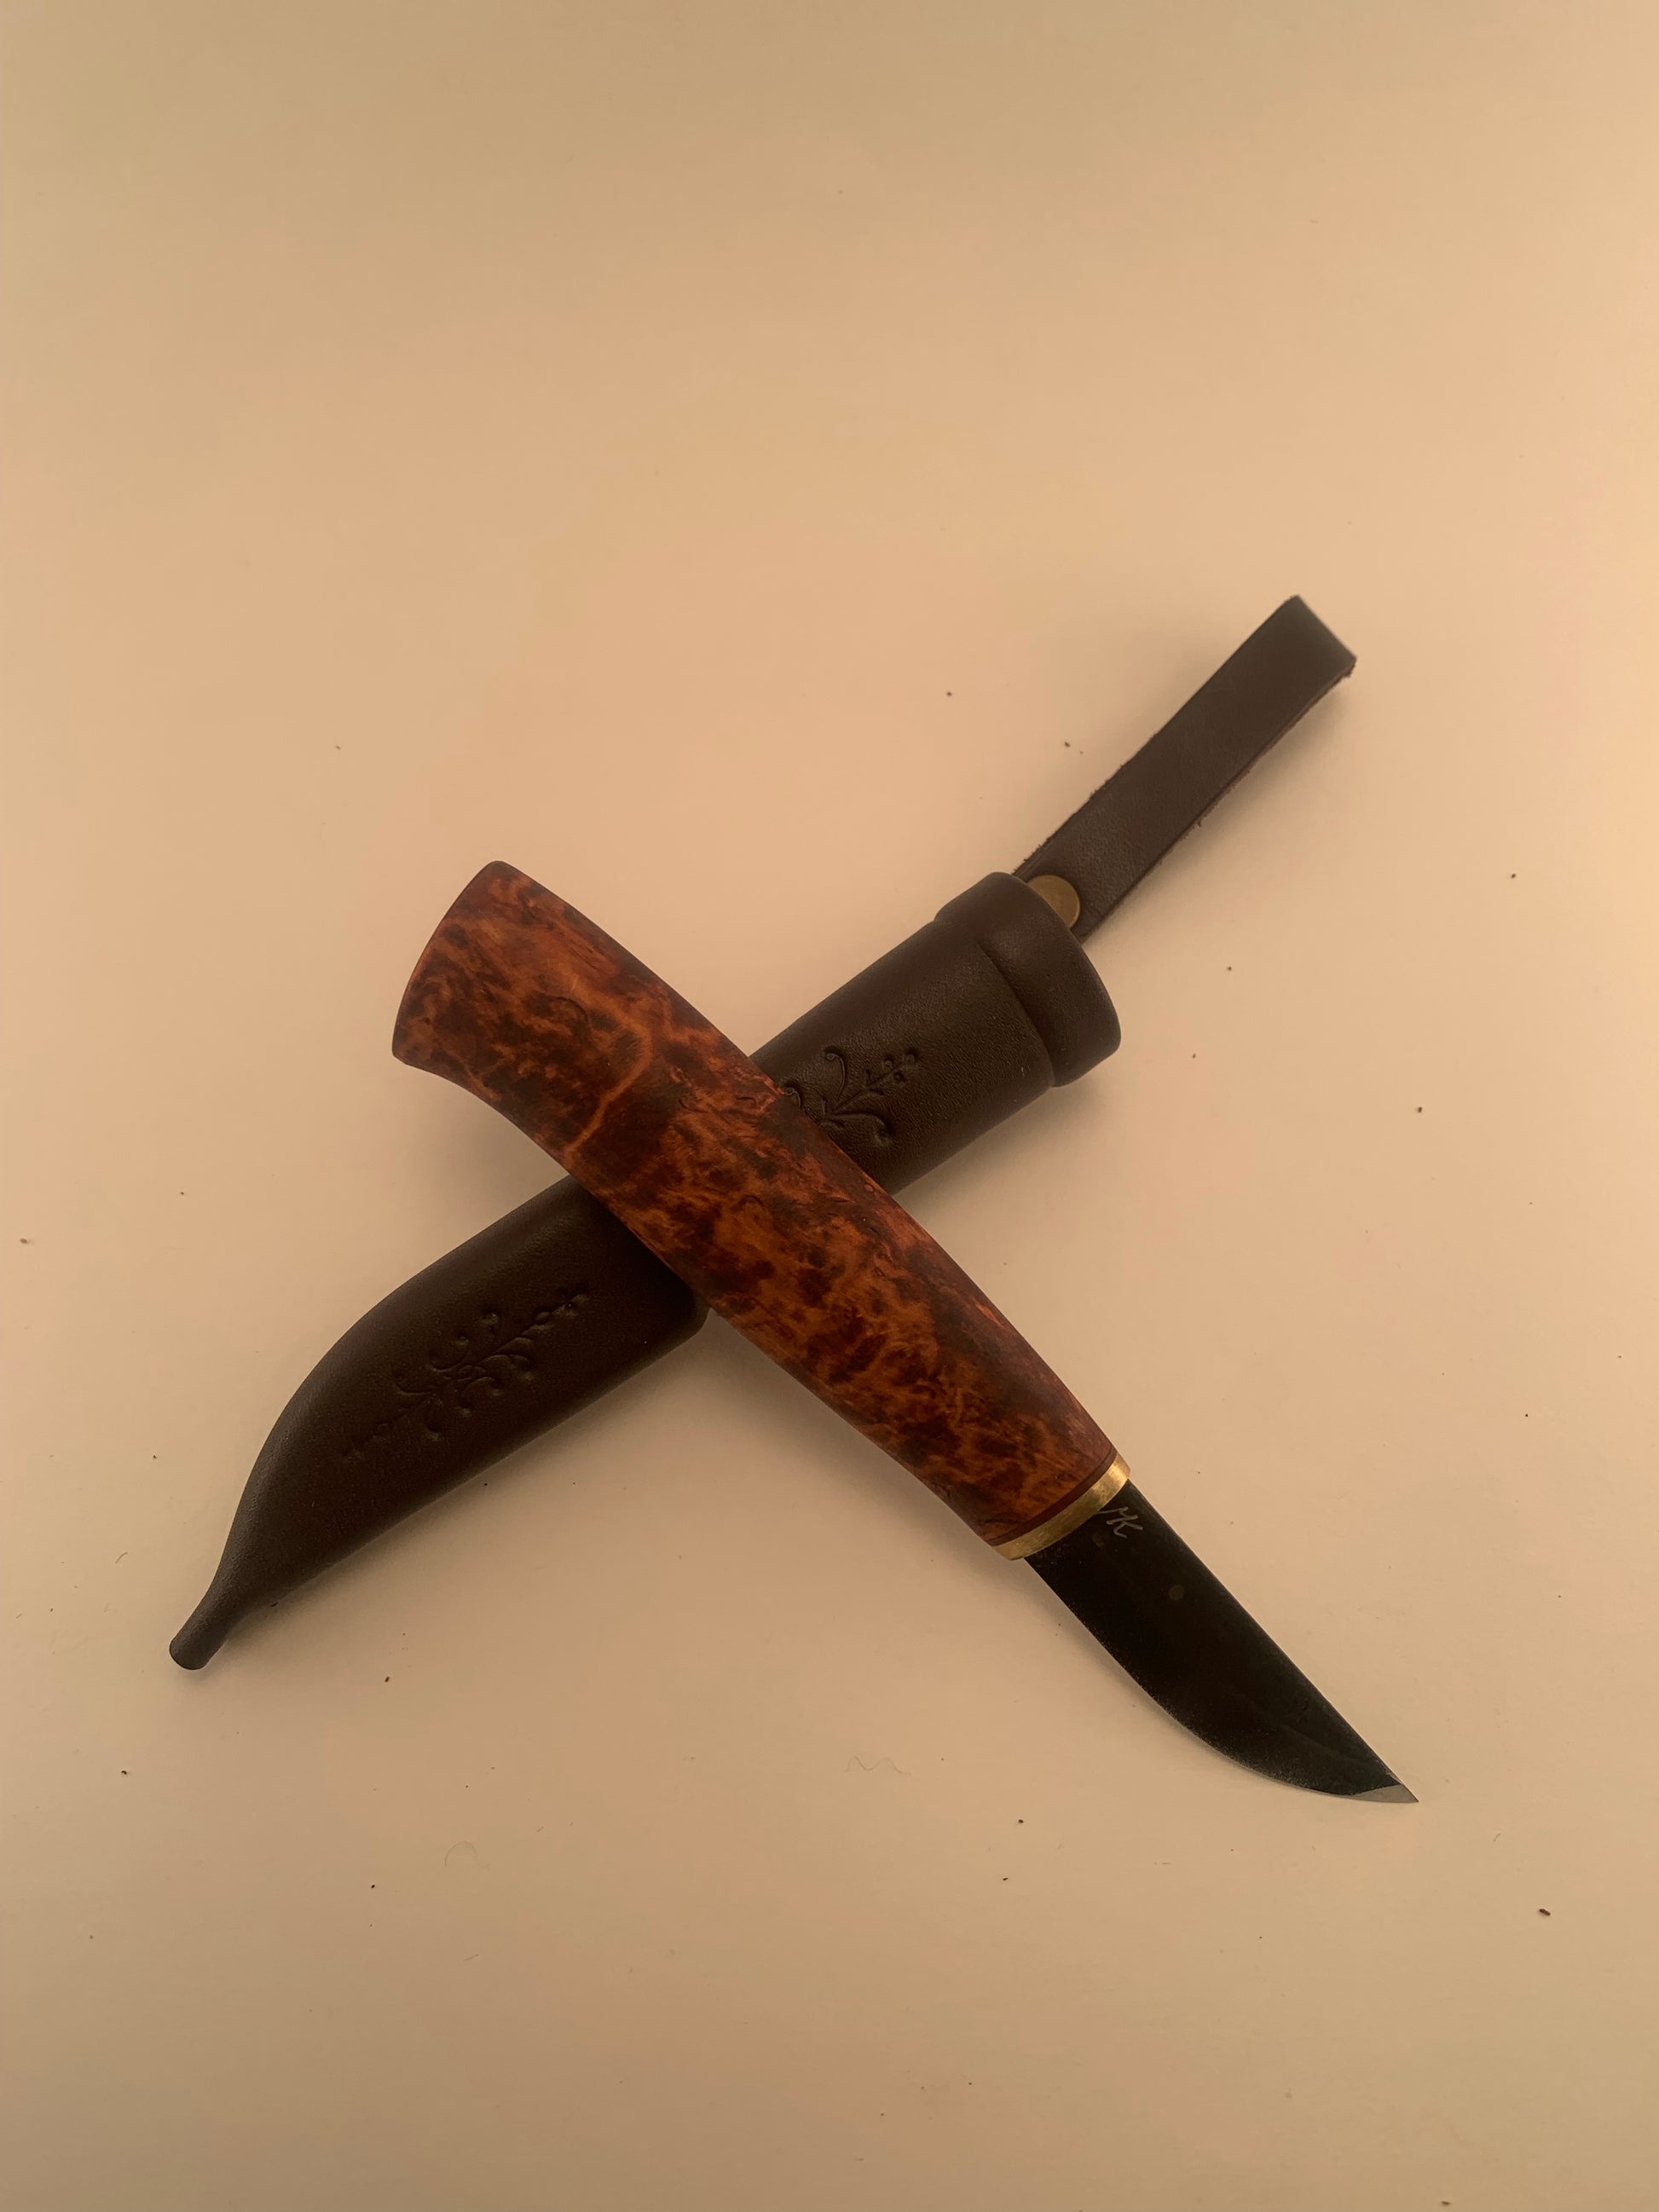 Kauhavan Activity Knife Outdoor Bushcraft Puukko Knife